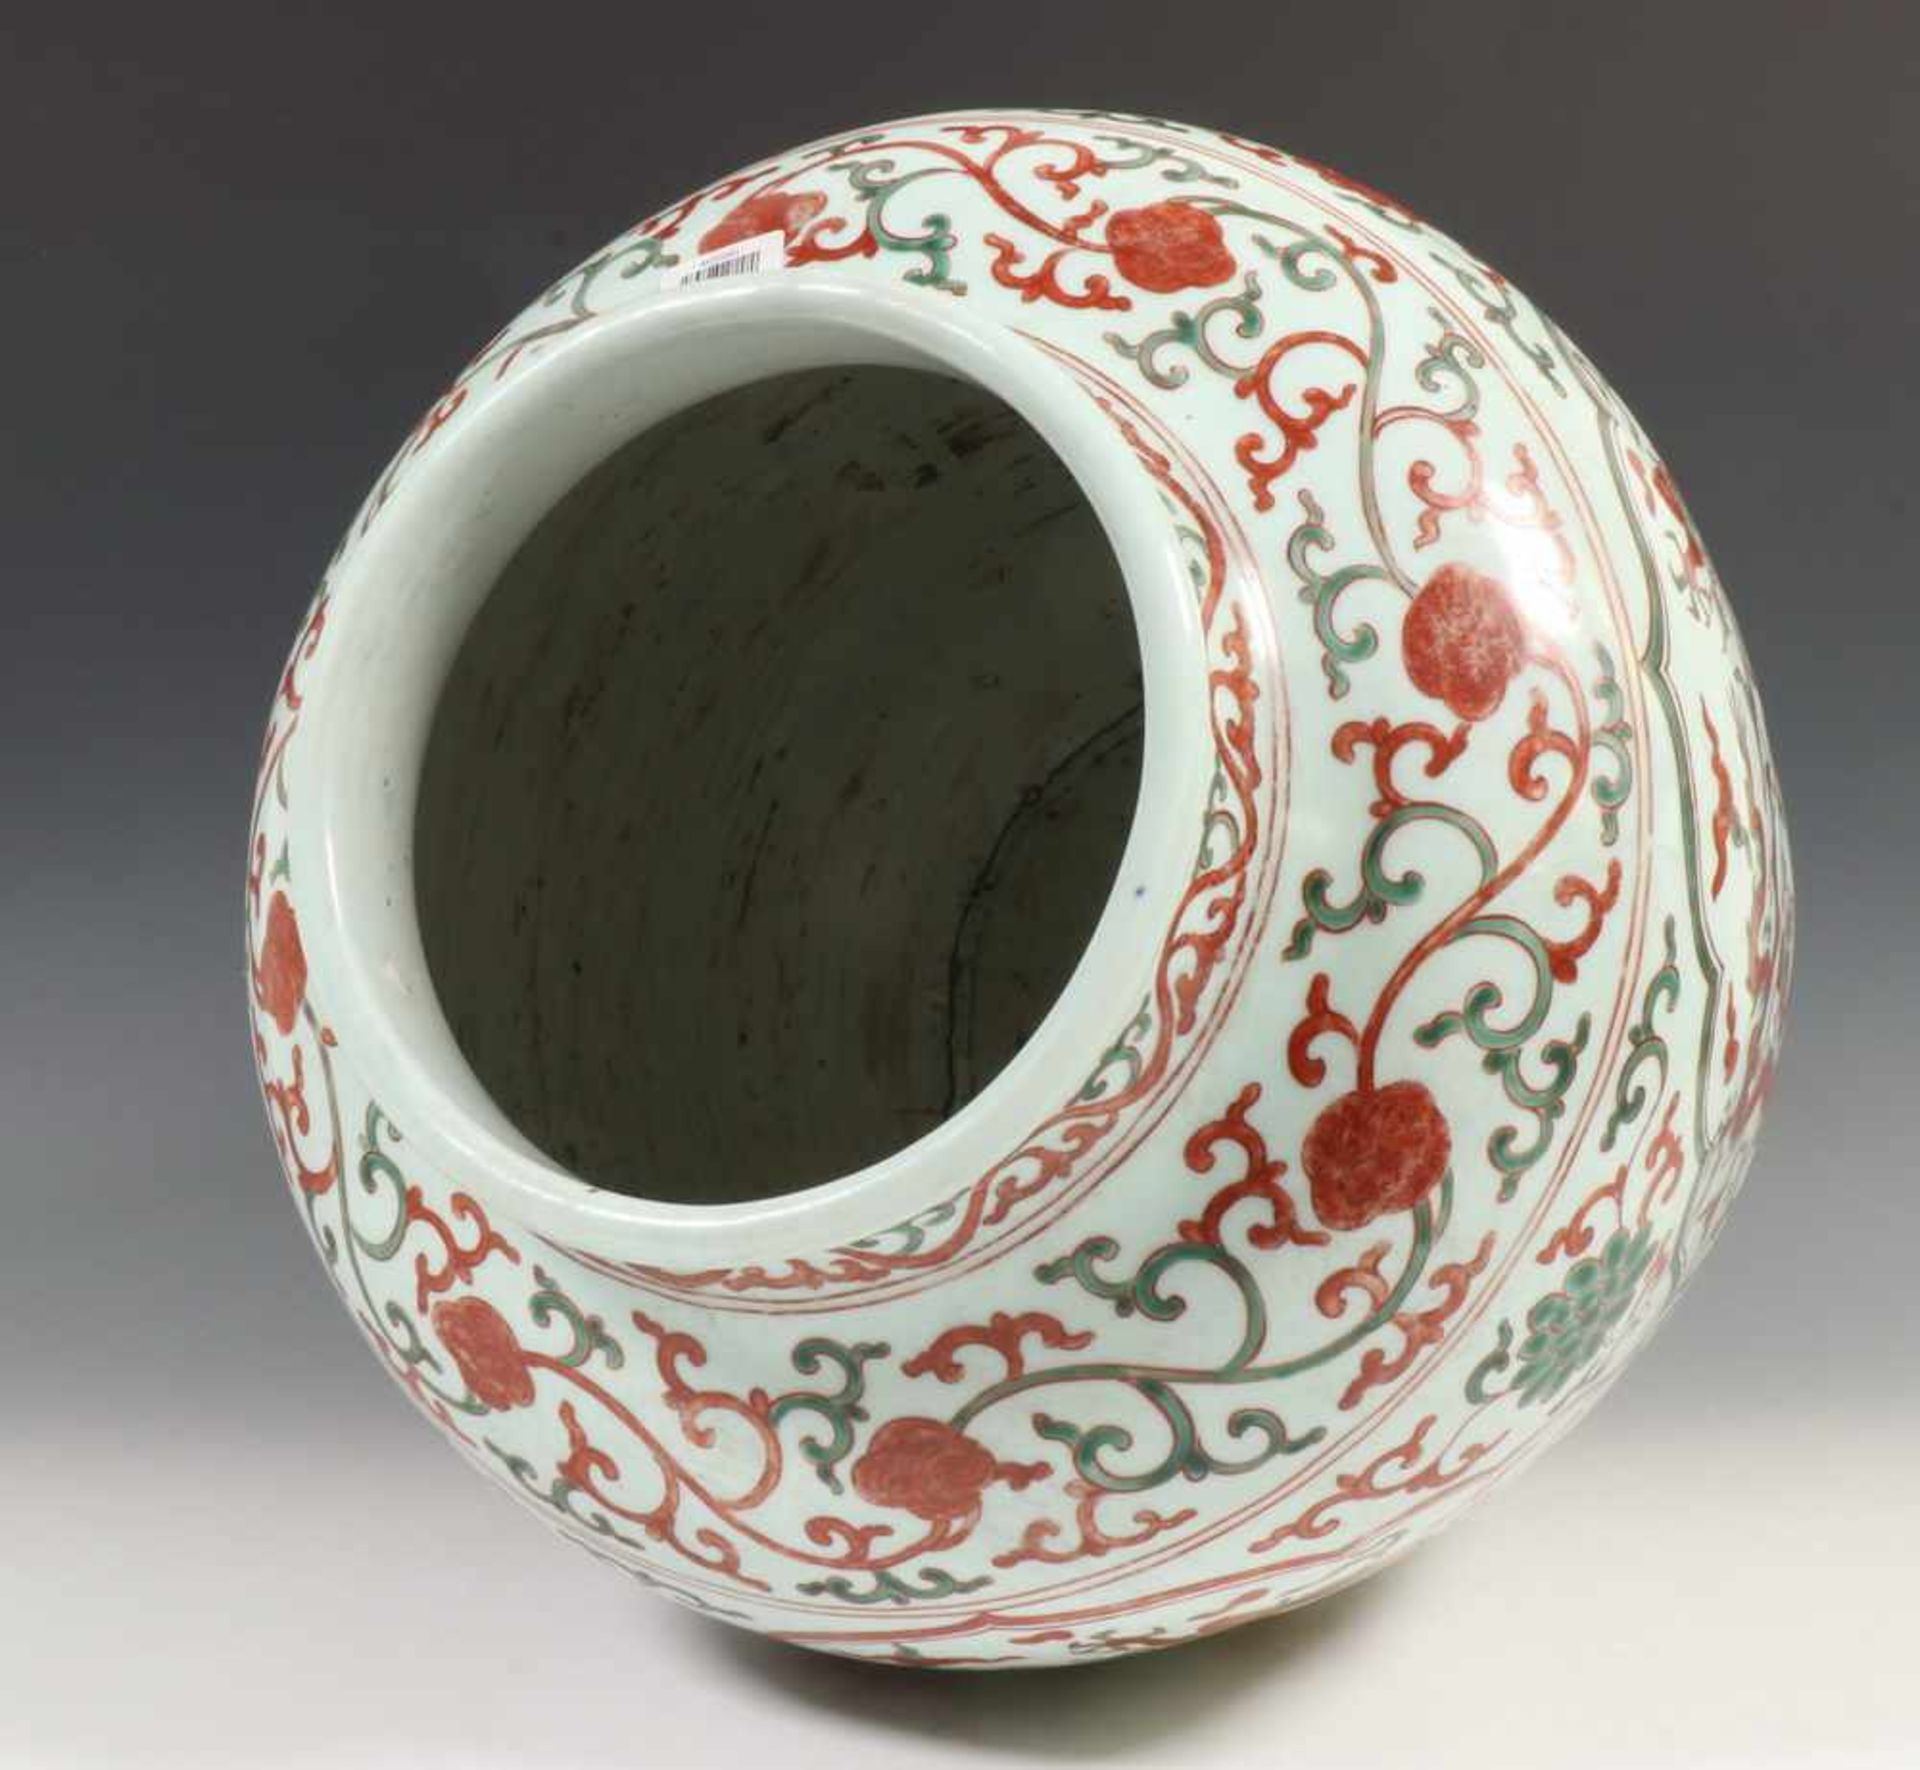 China, porseleinen pot in Ming stijl,met ijzerrood en verte decor van vier madaillons waarin twee - Bild 3 aus 4